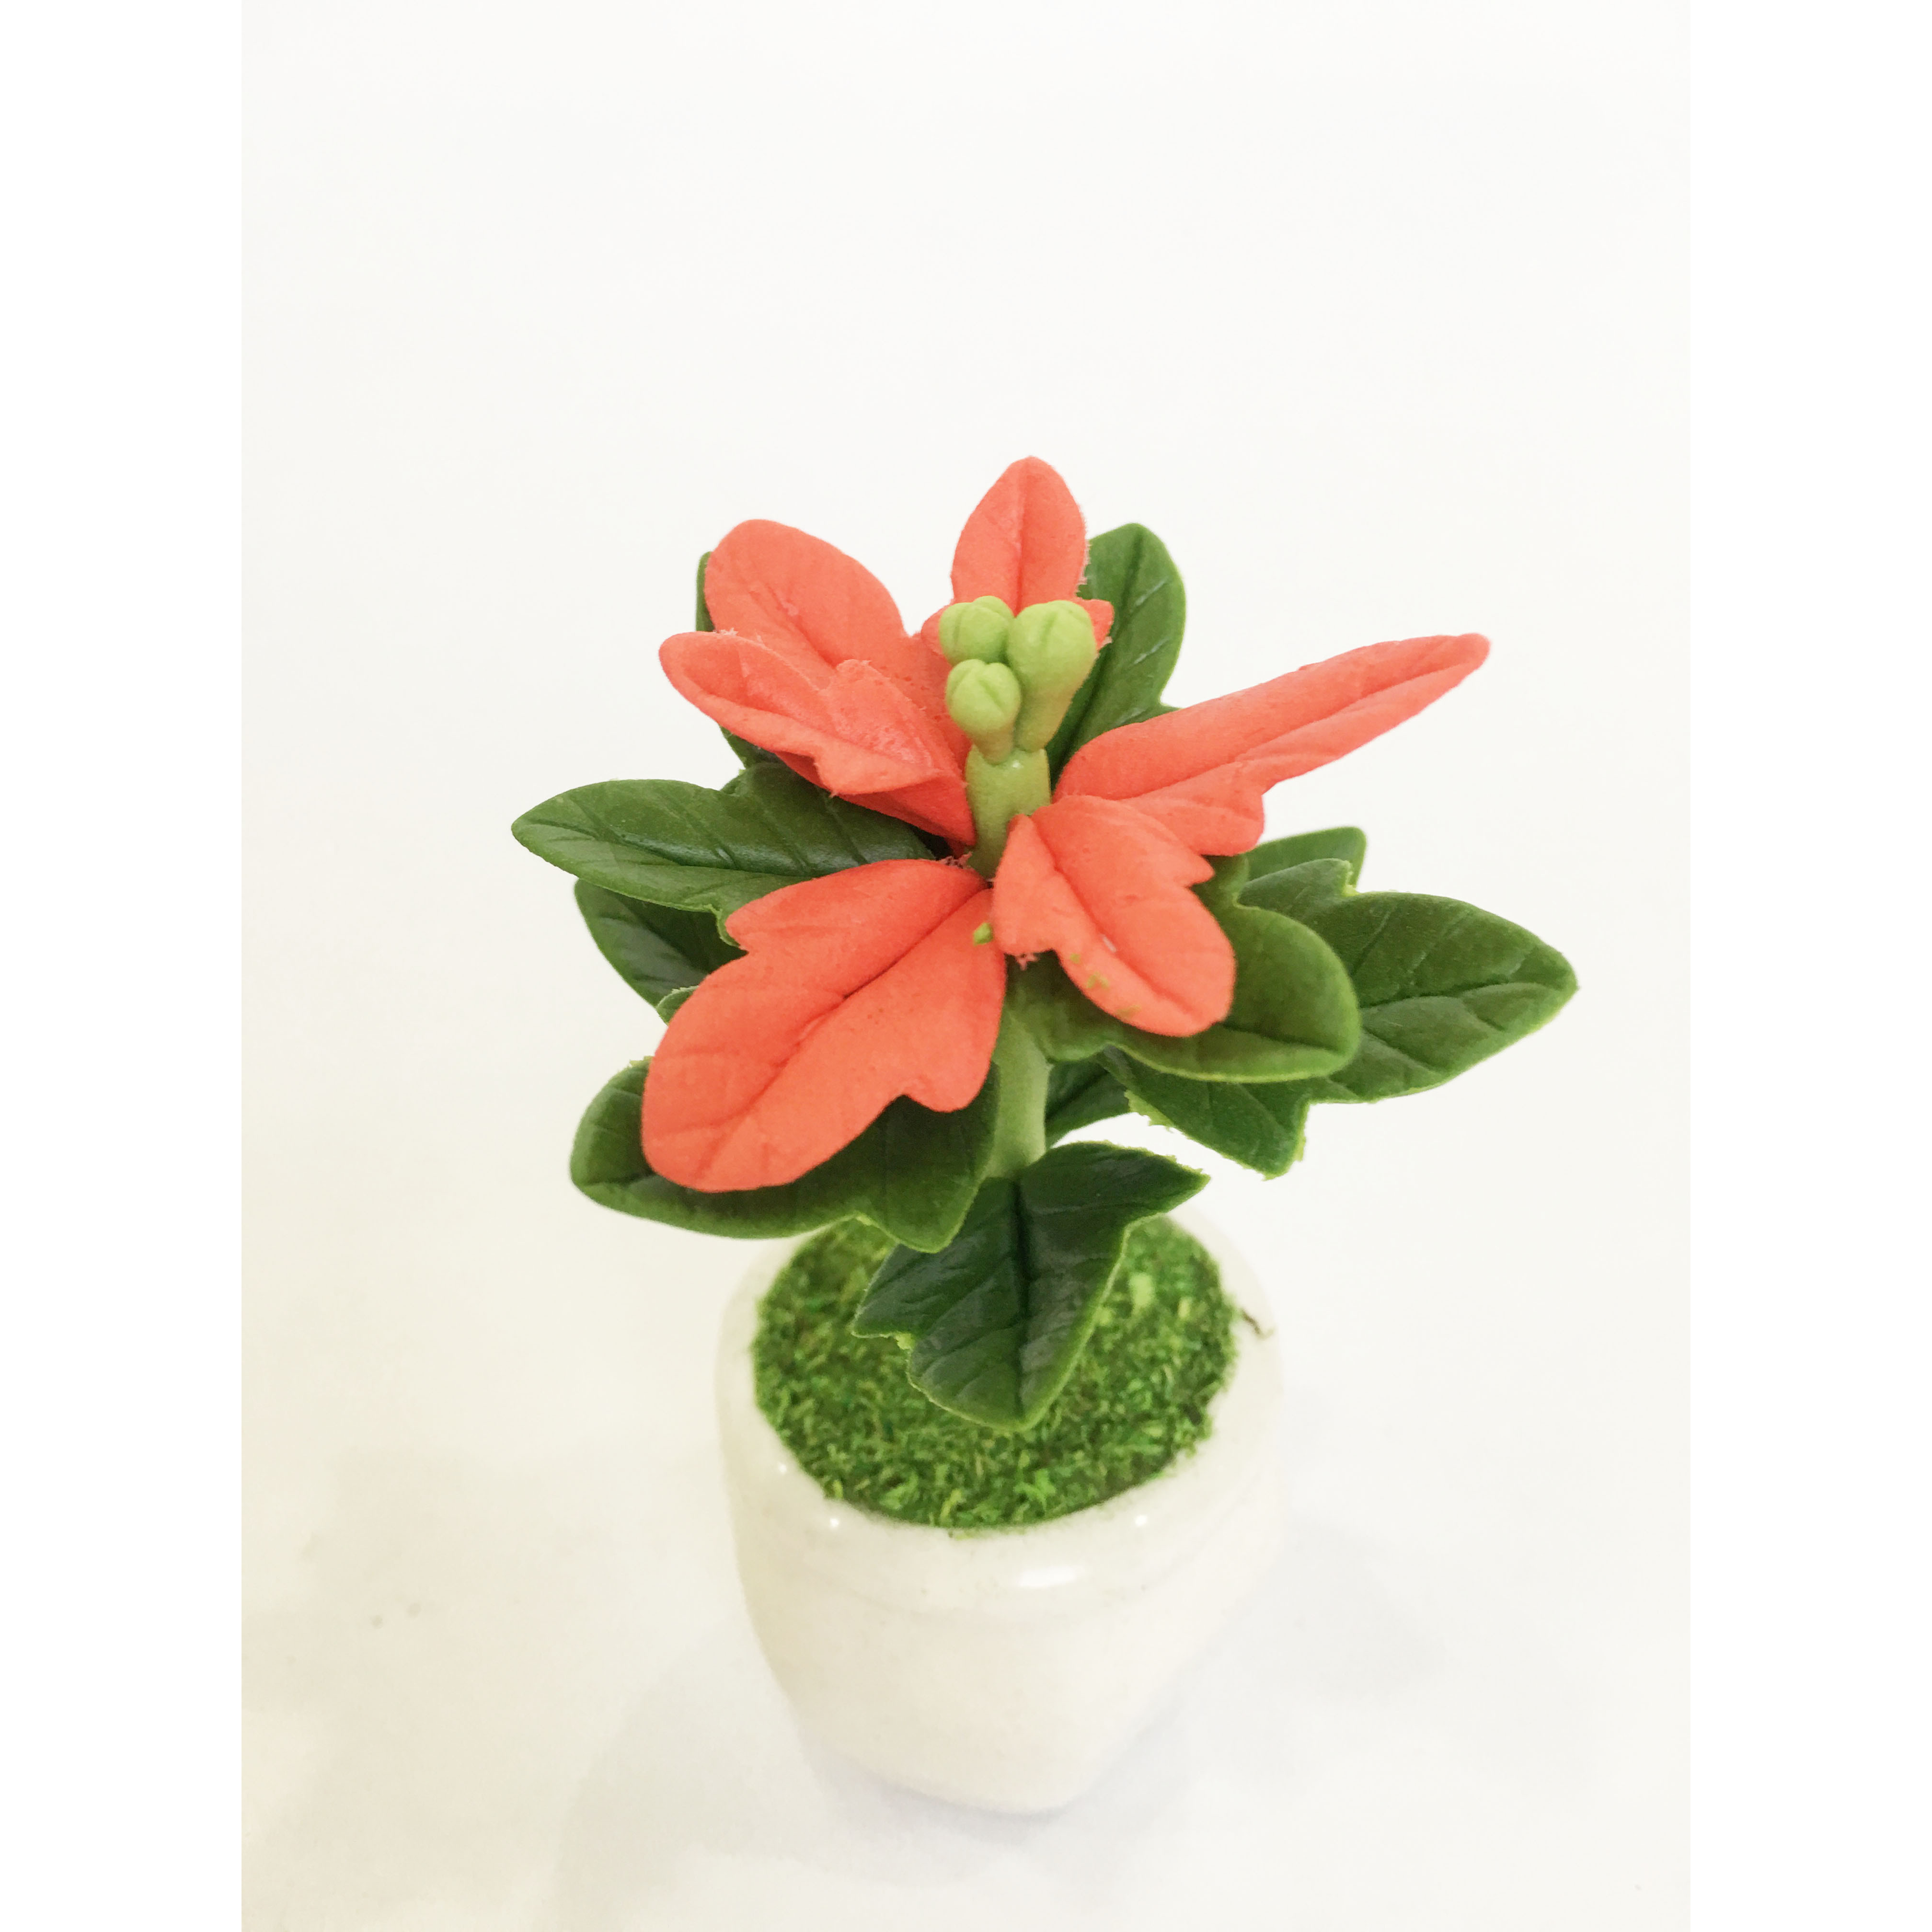 Chậu hoa đất sét mini - Cây hoa trạng nguyên lá đỏ may mắn - Quà tặng trang trí handmade